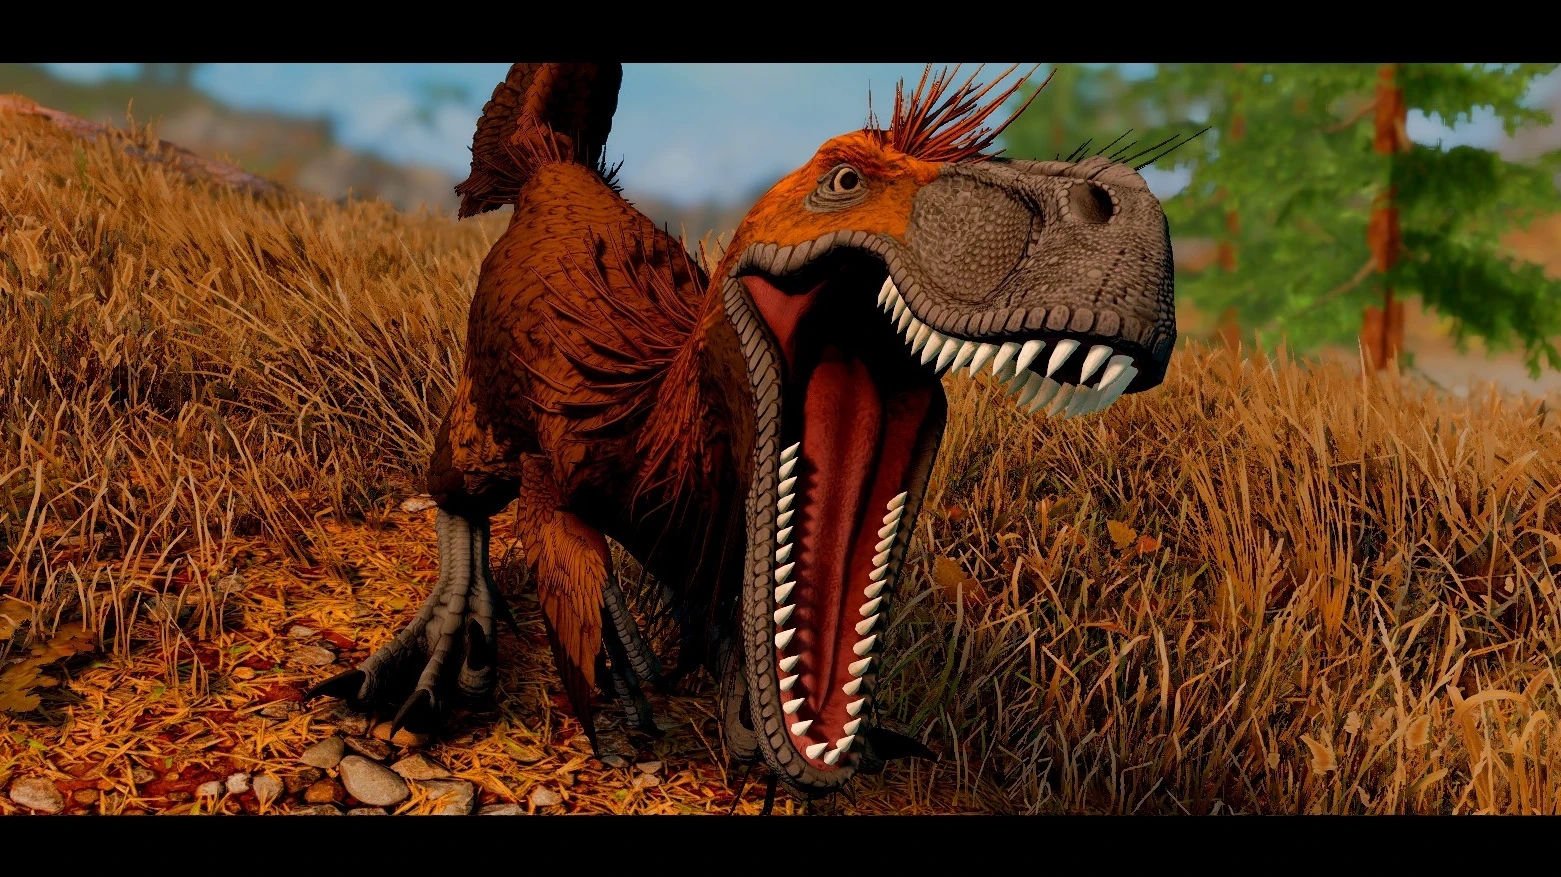 Skyrim finalmente accoglie i dinosauri nel mondo di gioco, grazie a una mod